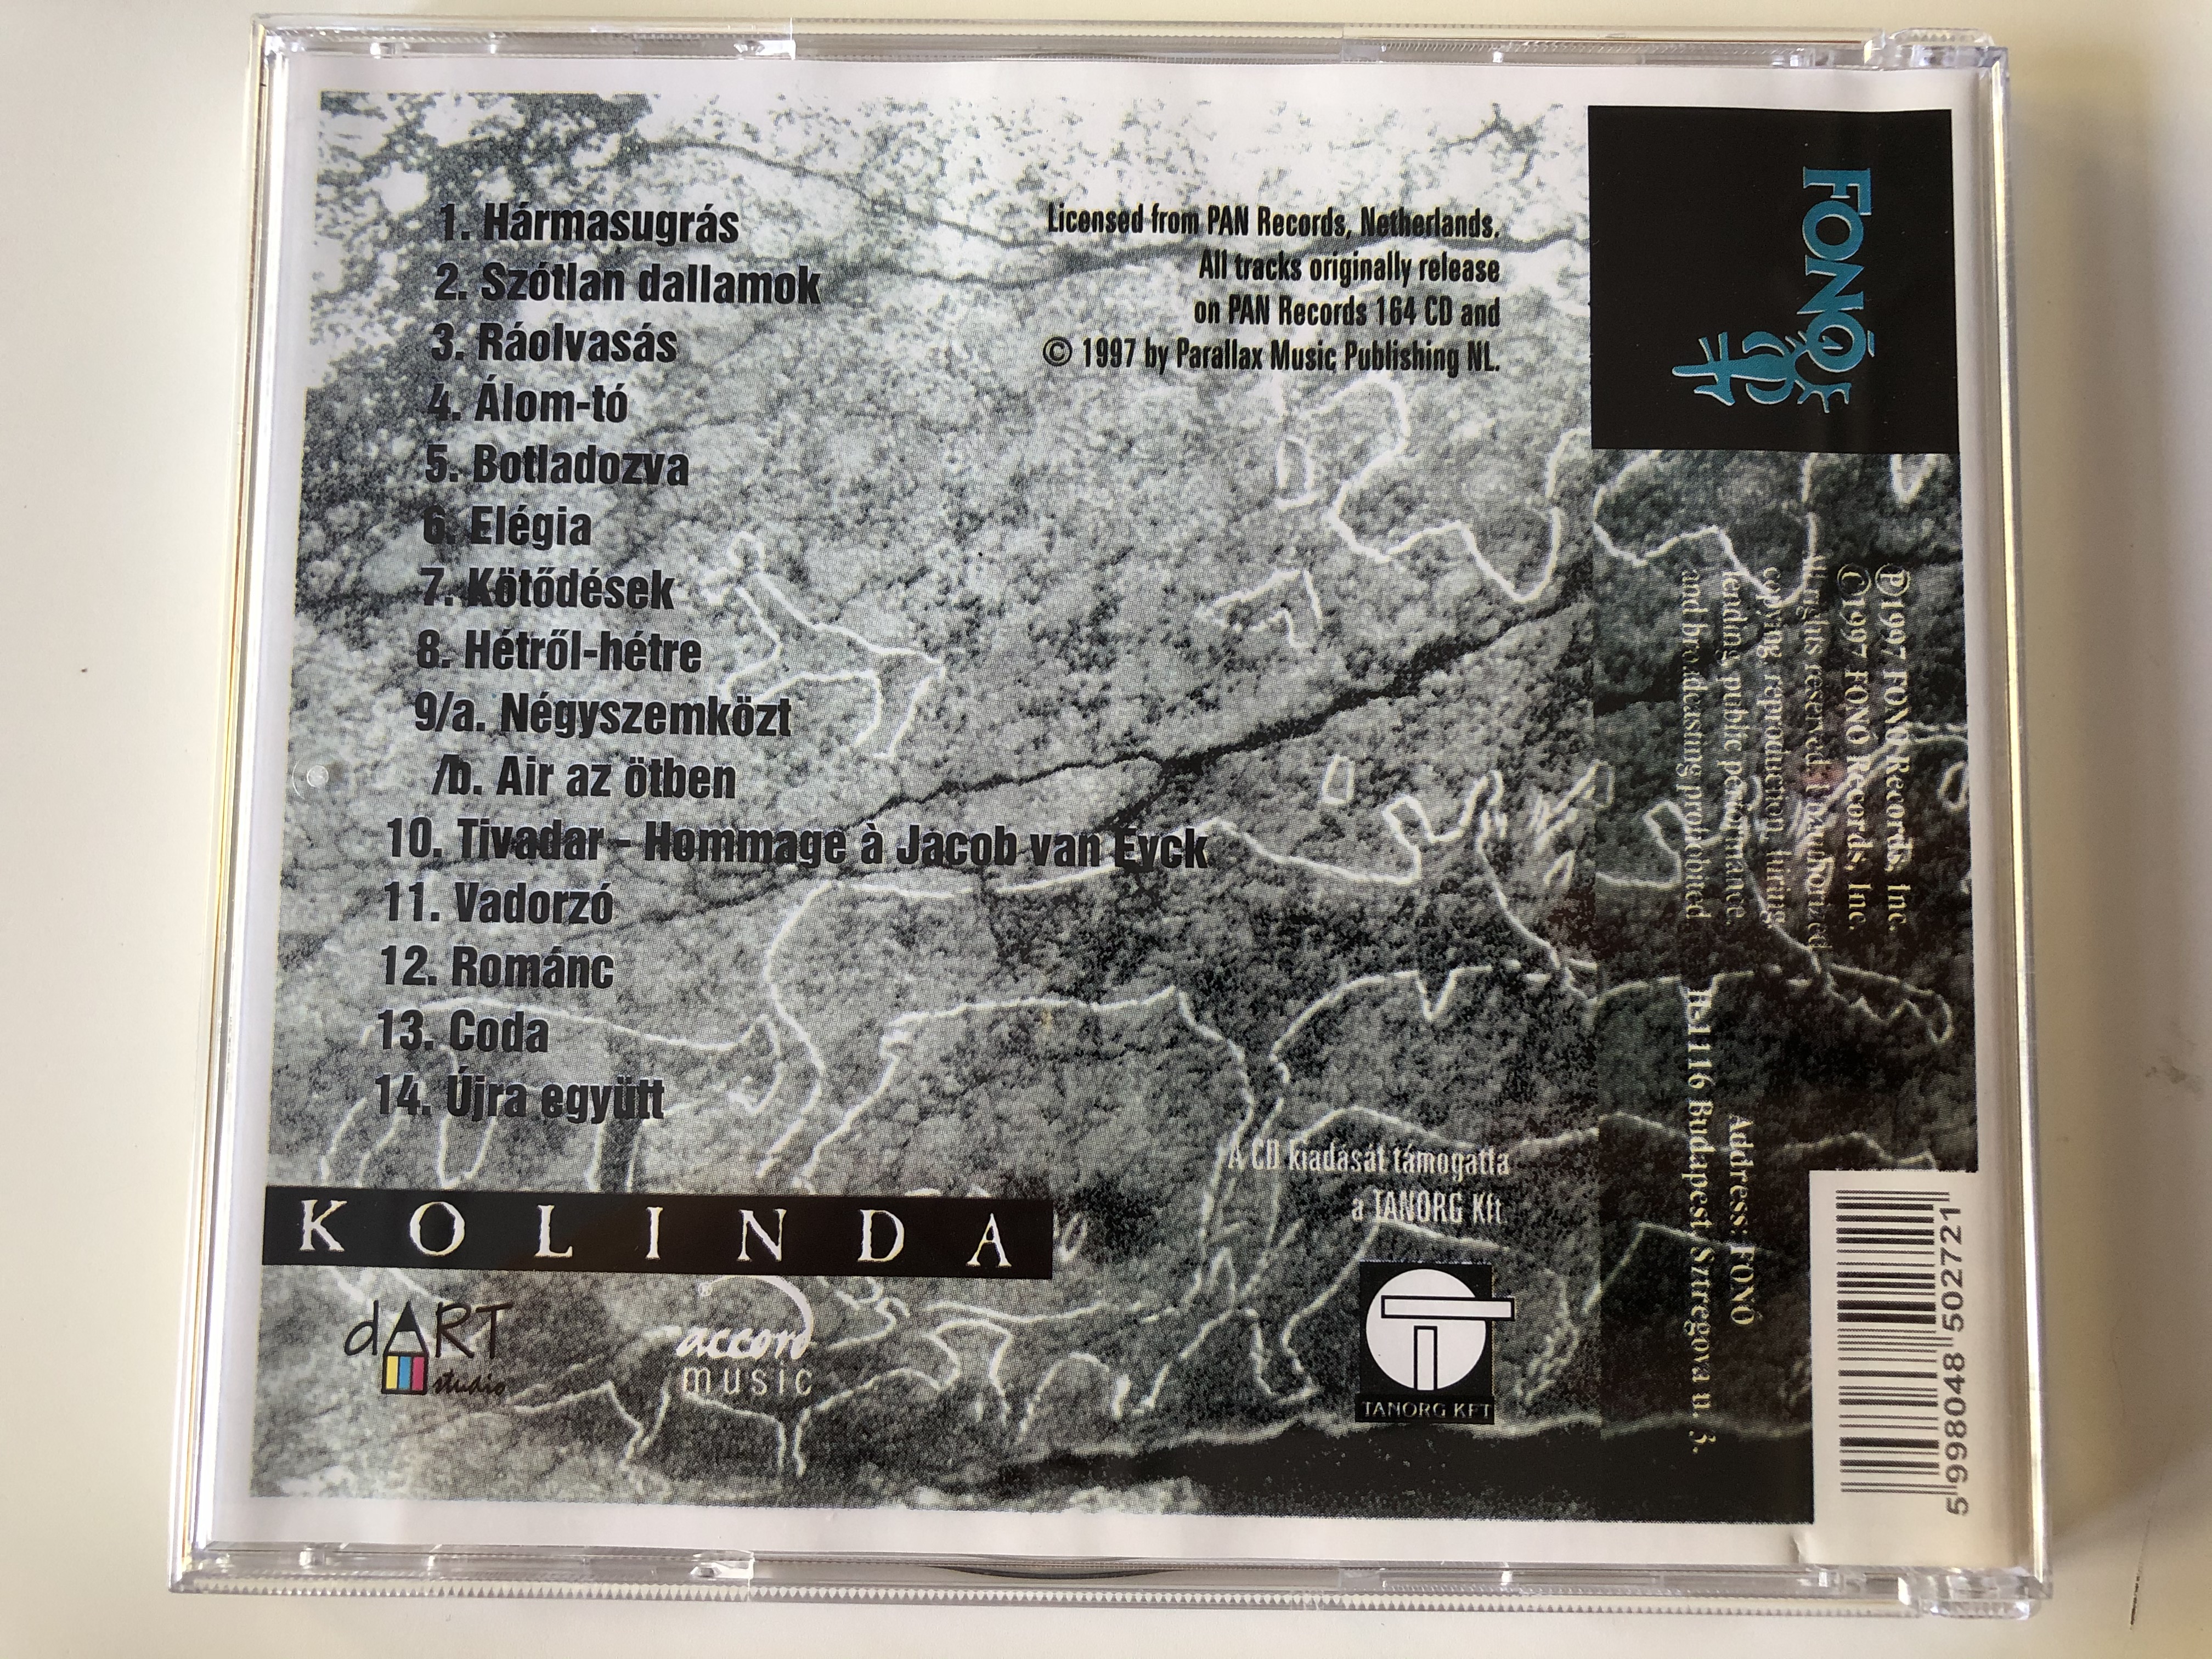 kolinda-r-olvas-s-fon-records-audio-cd-1997-fa-027-2-6-.jpg